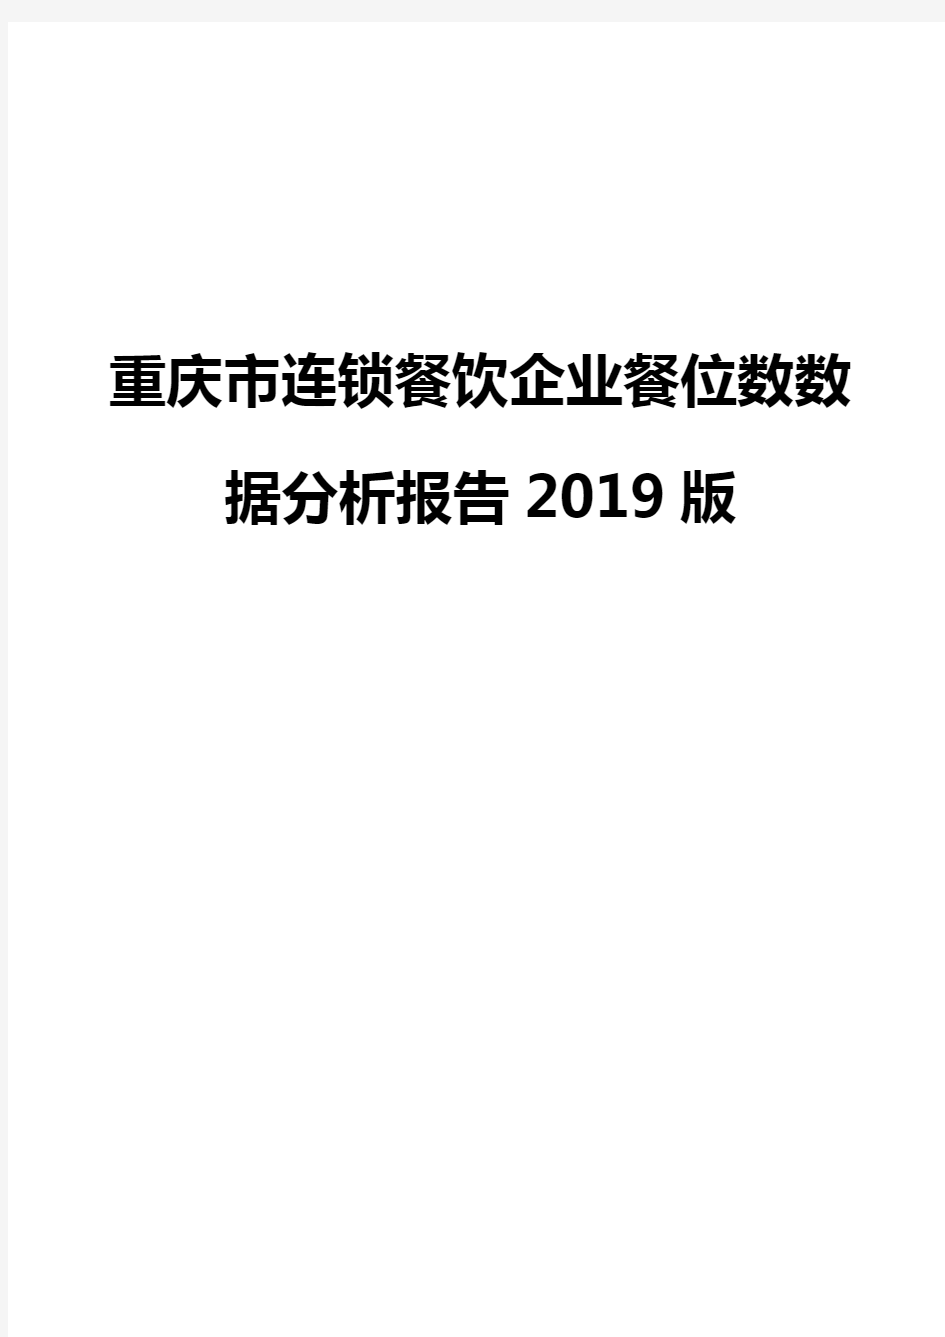 重庆市连锁餐饮企业餐位数数据分析报告2019版